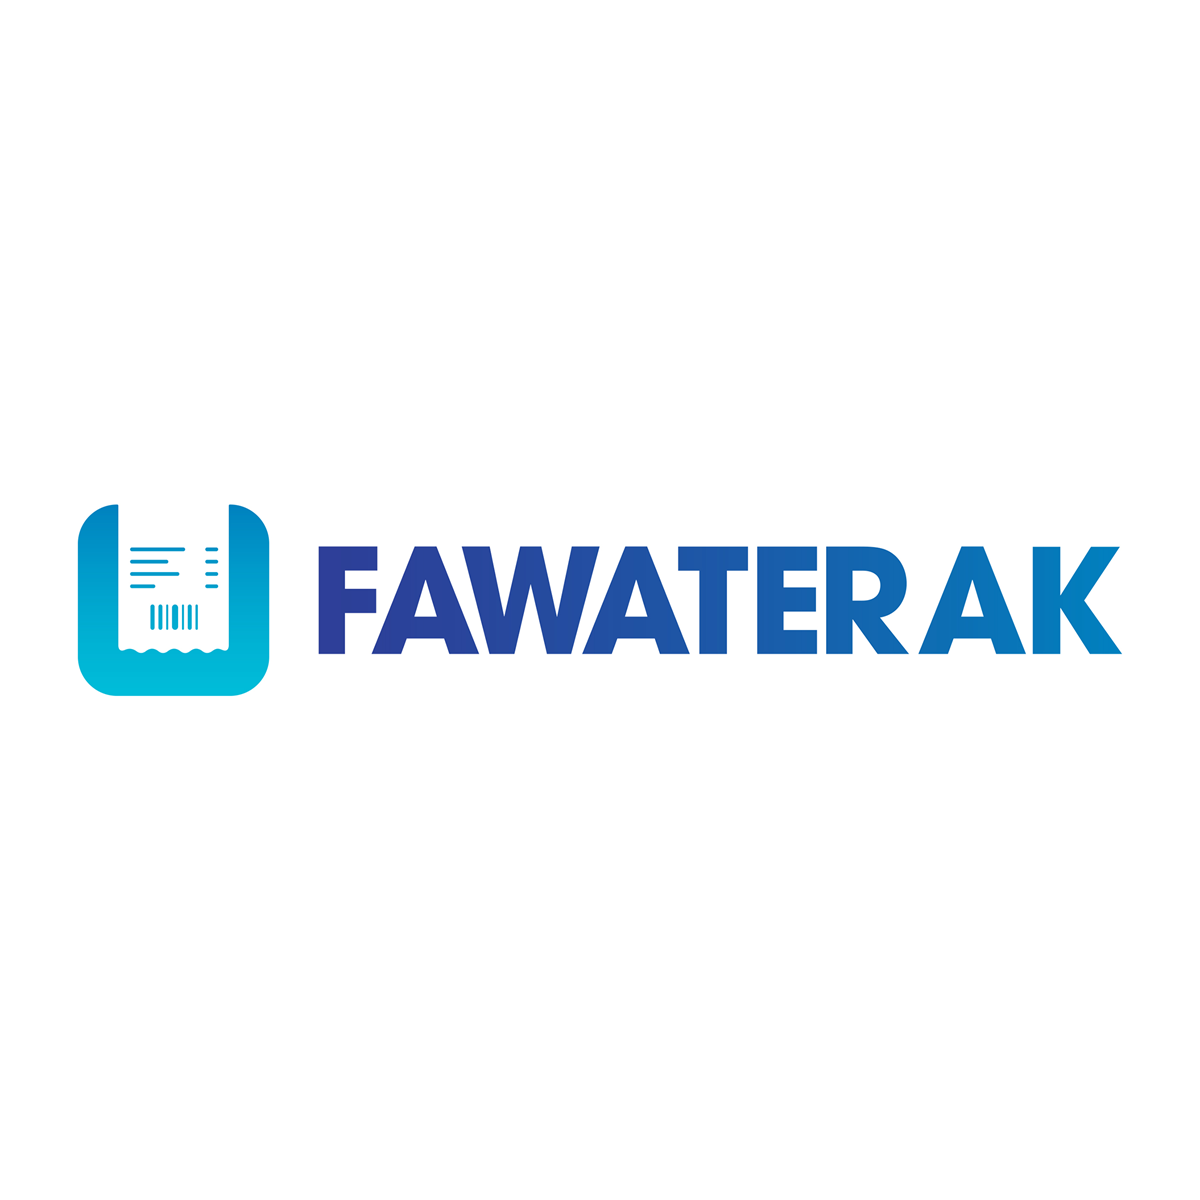 Fawaterak Payment Gateway